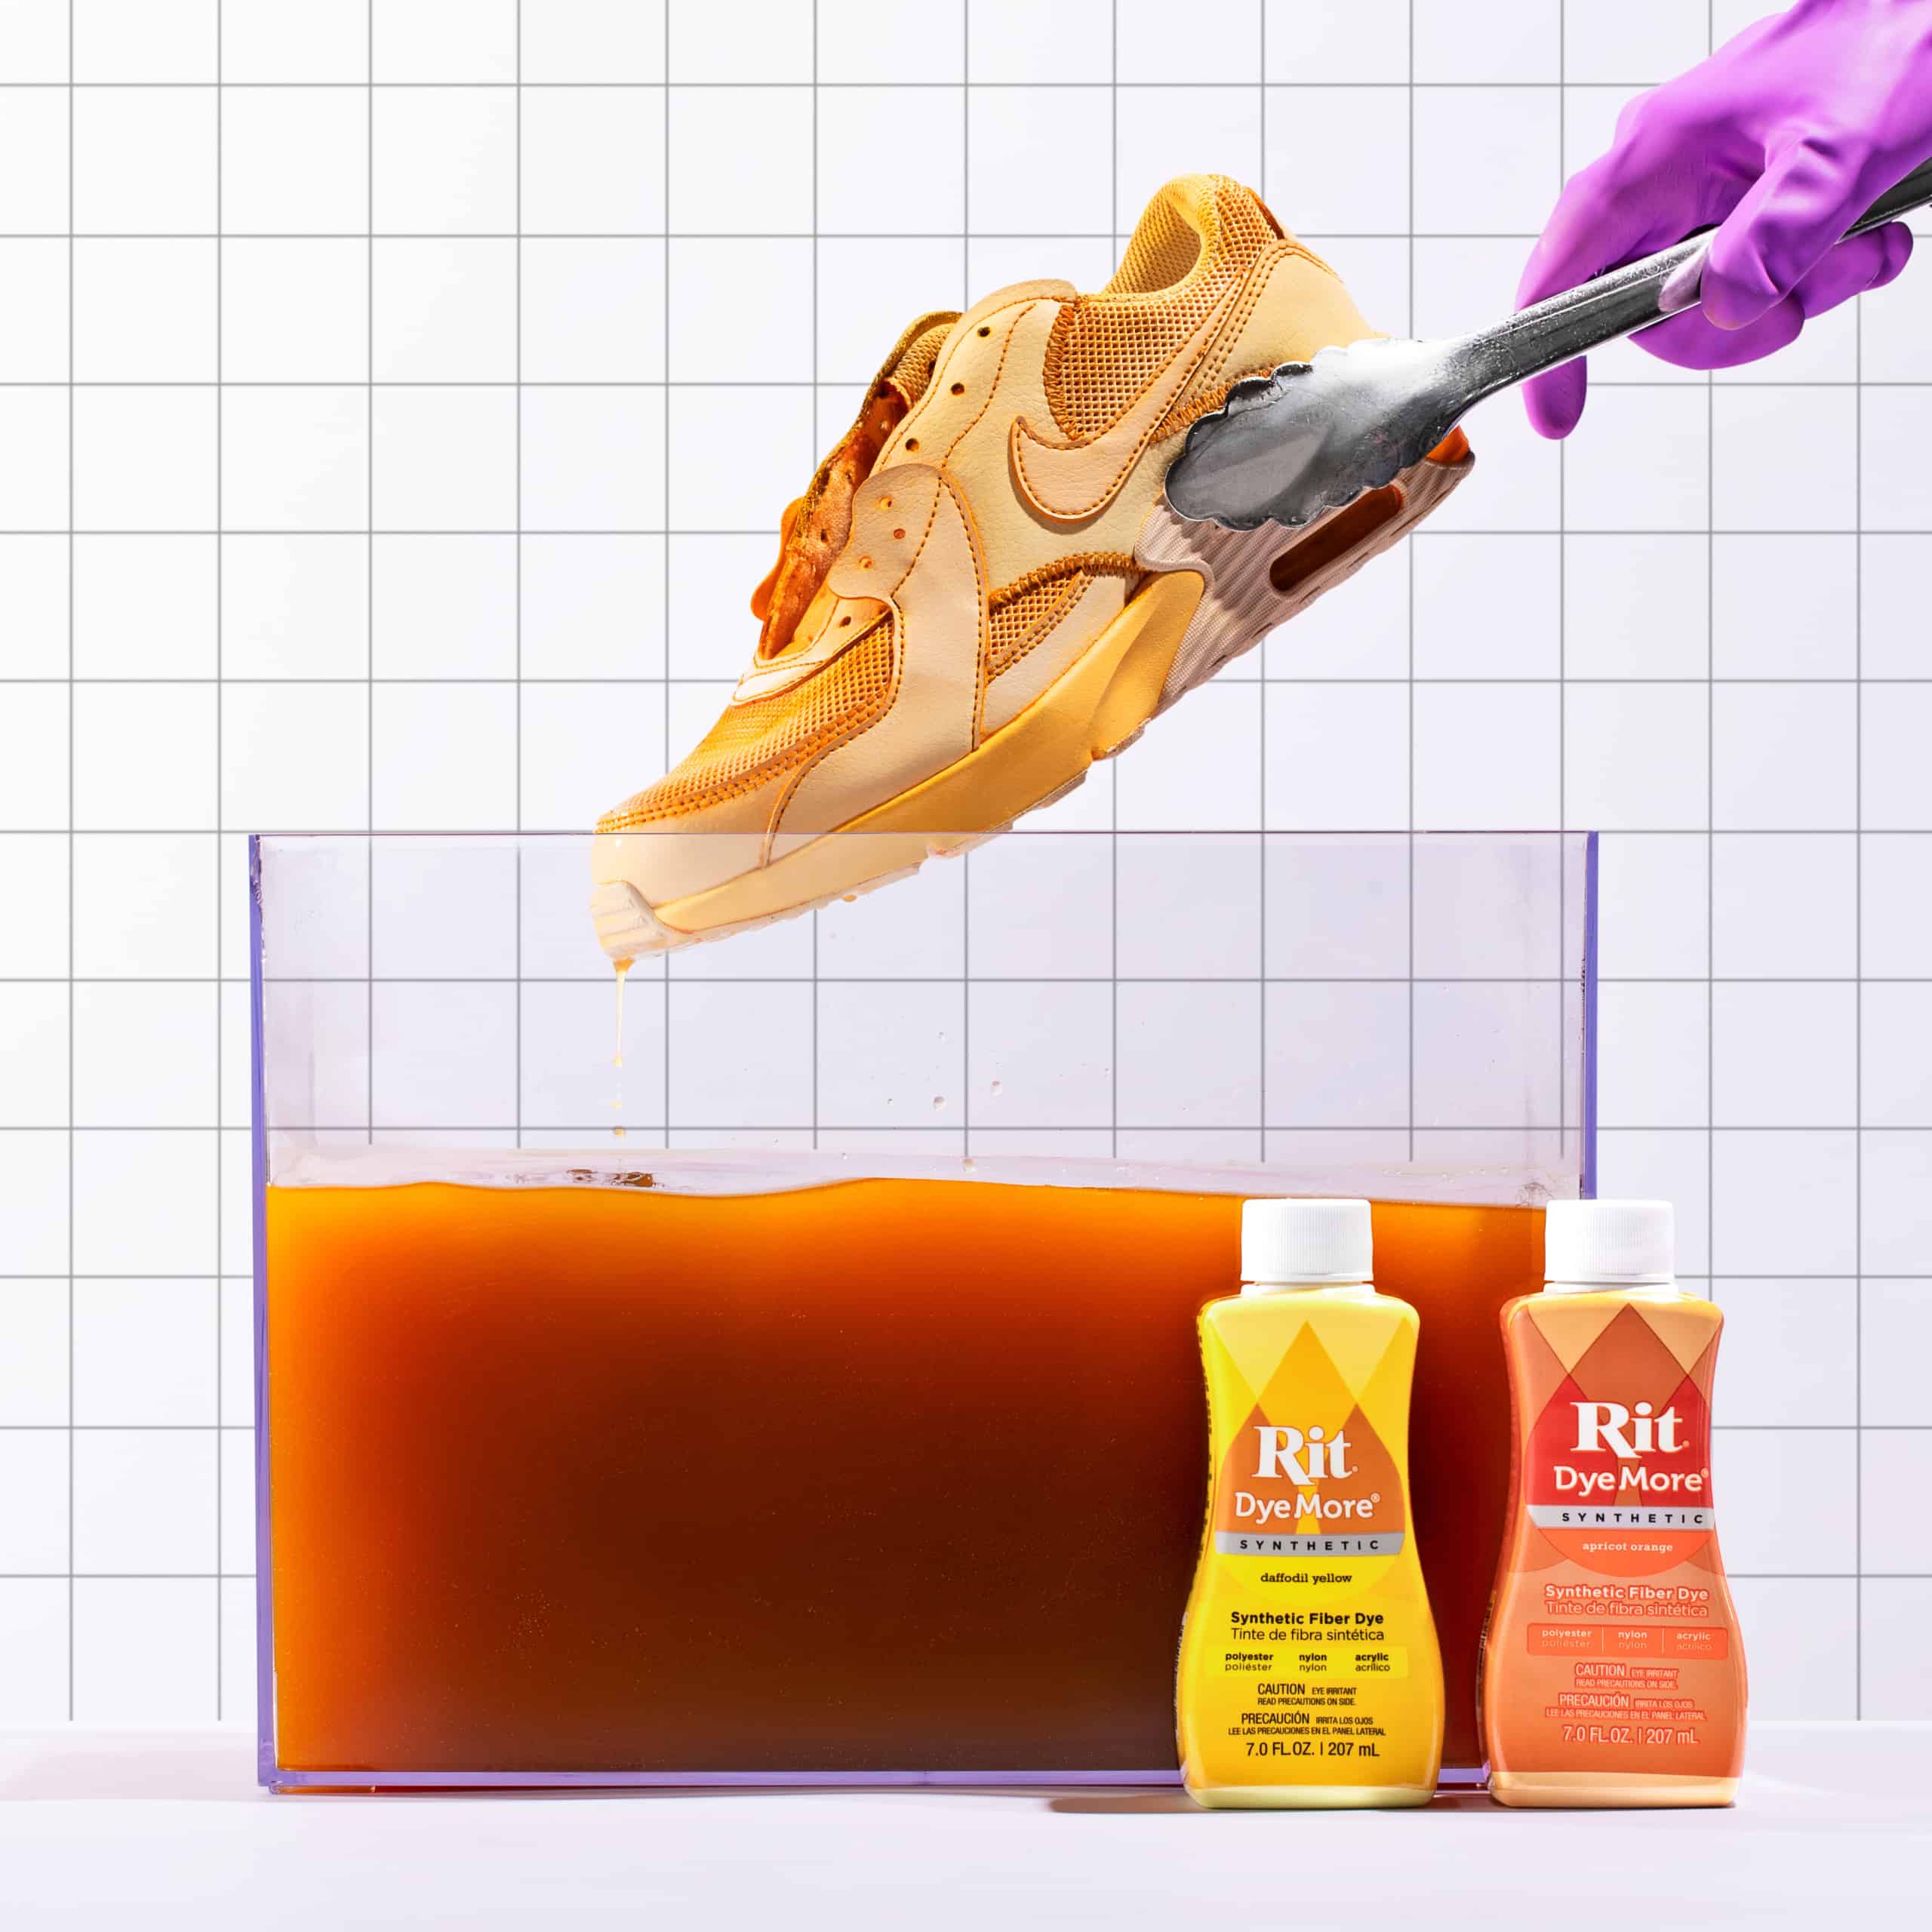 Rit Dye More Synthetic Fiber Dye Apricot Orange